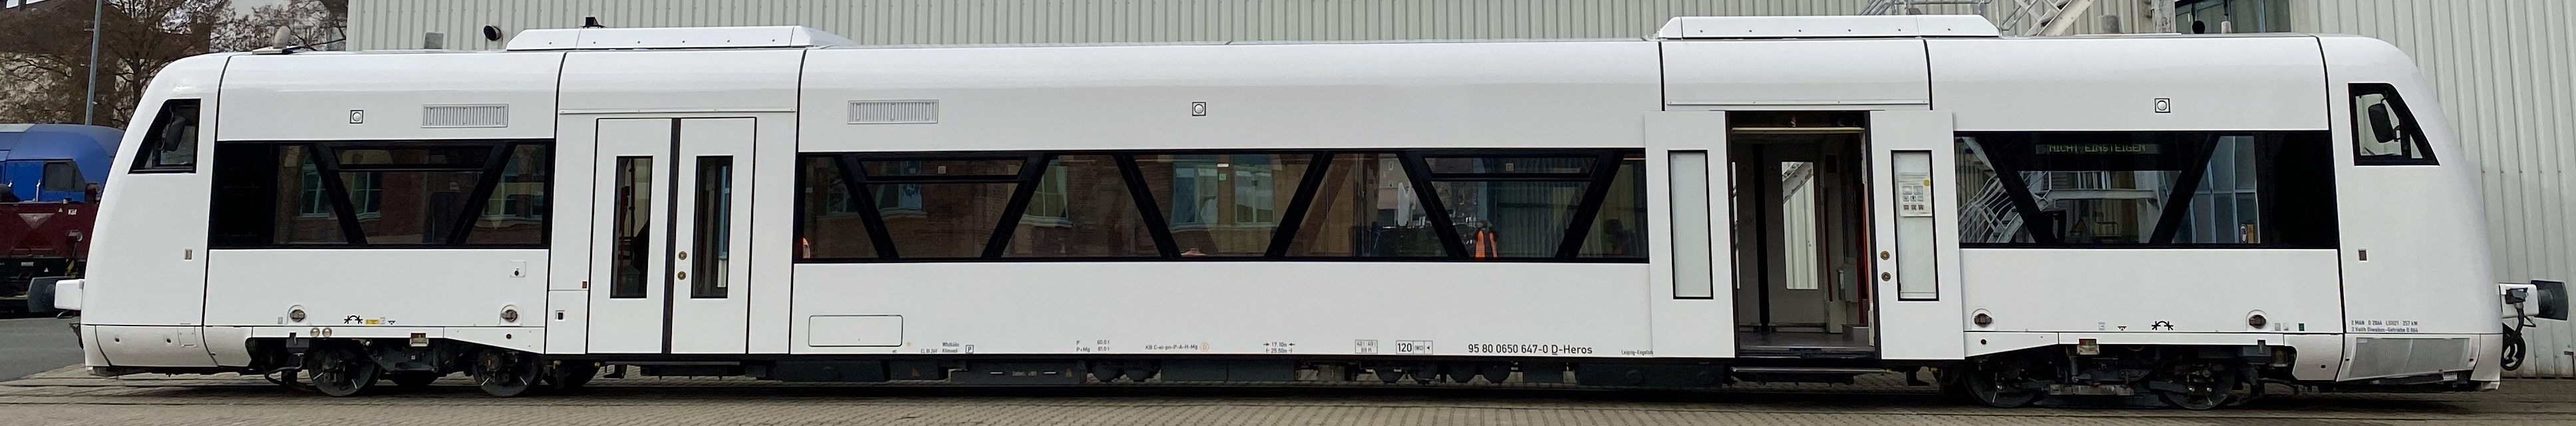 autocarril autoriel rama divisible Stadler RegioShuttle RS1 serie 3 con aire condicionado piso rebajado, entrada rebajada, tren regional, foto: HEROS